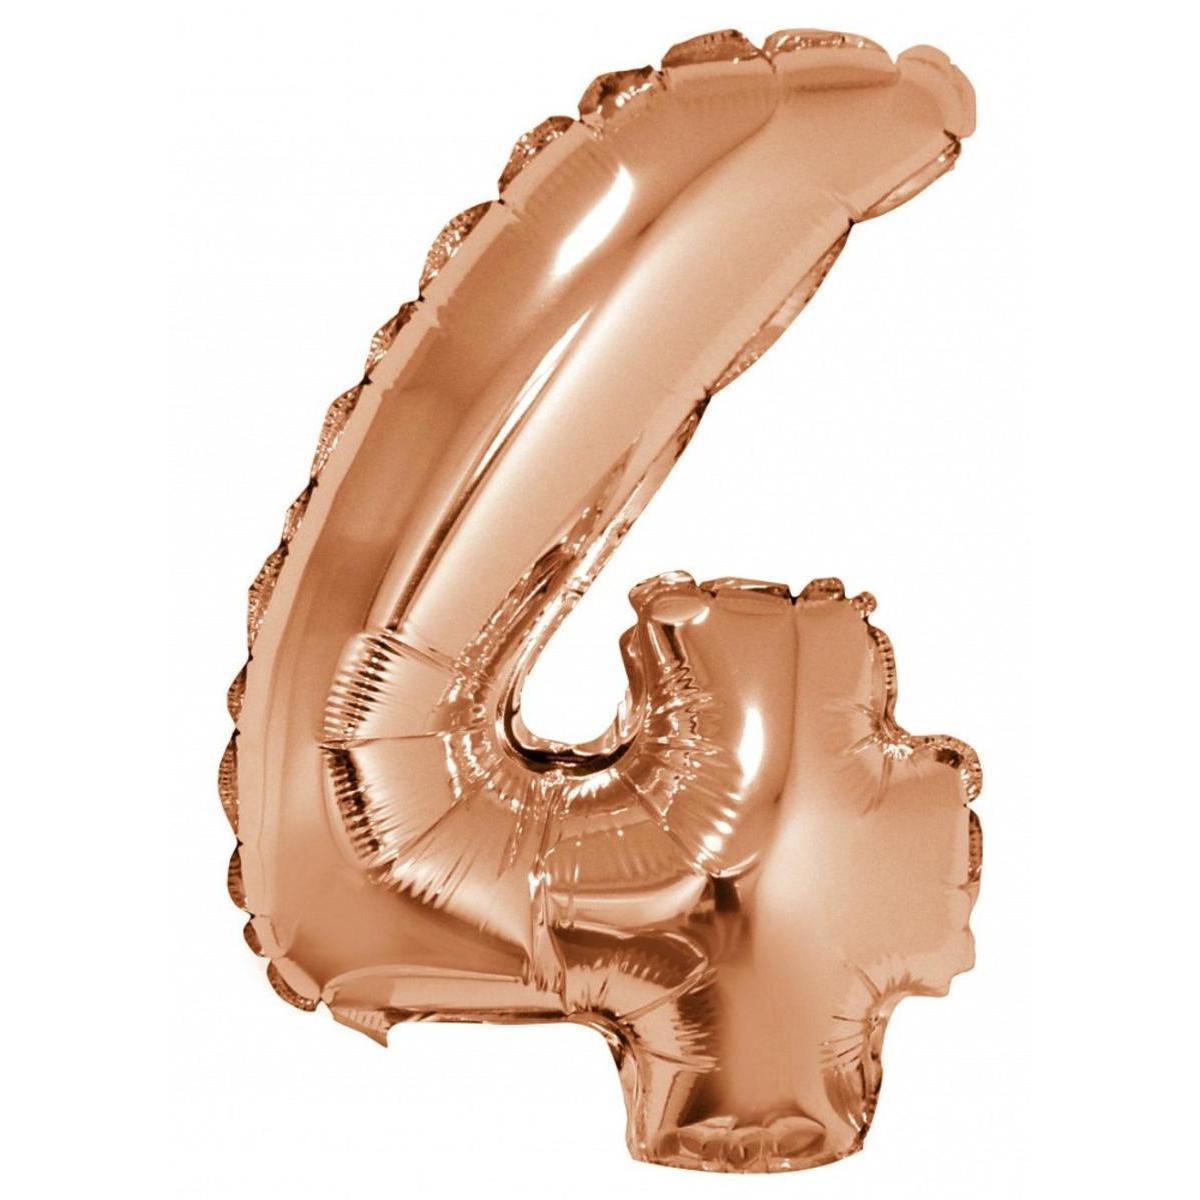 Ballon chiffre 4 - H 40 cm - Rose gold - C'PARTY